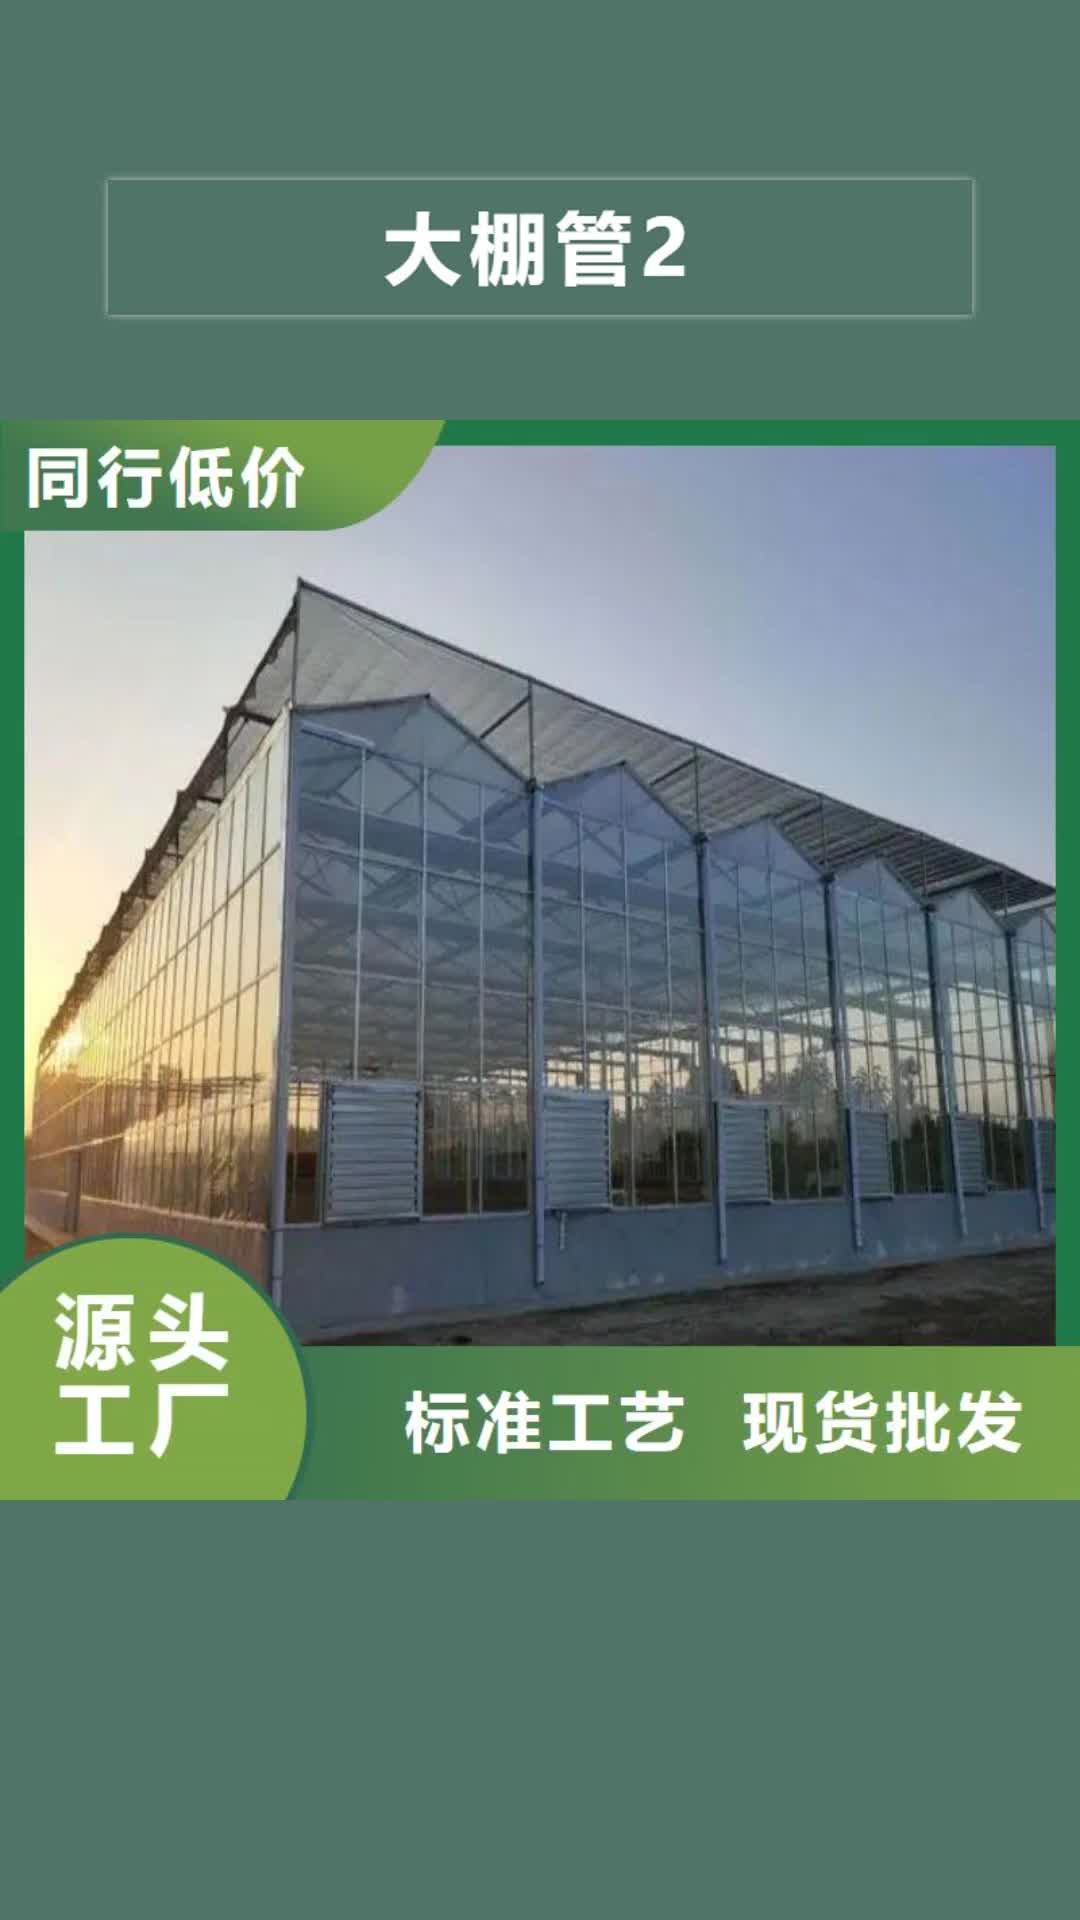 台湾大棚管2
蔬菜温室大棚管精致工艺